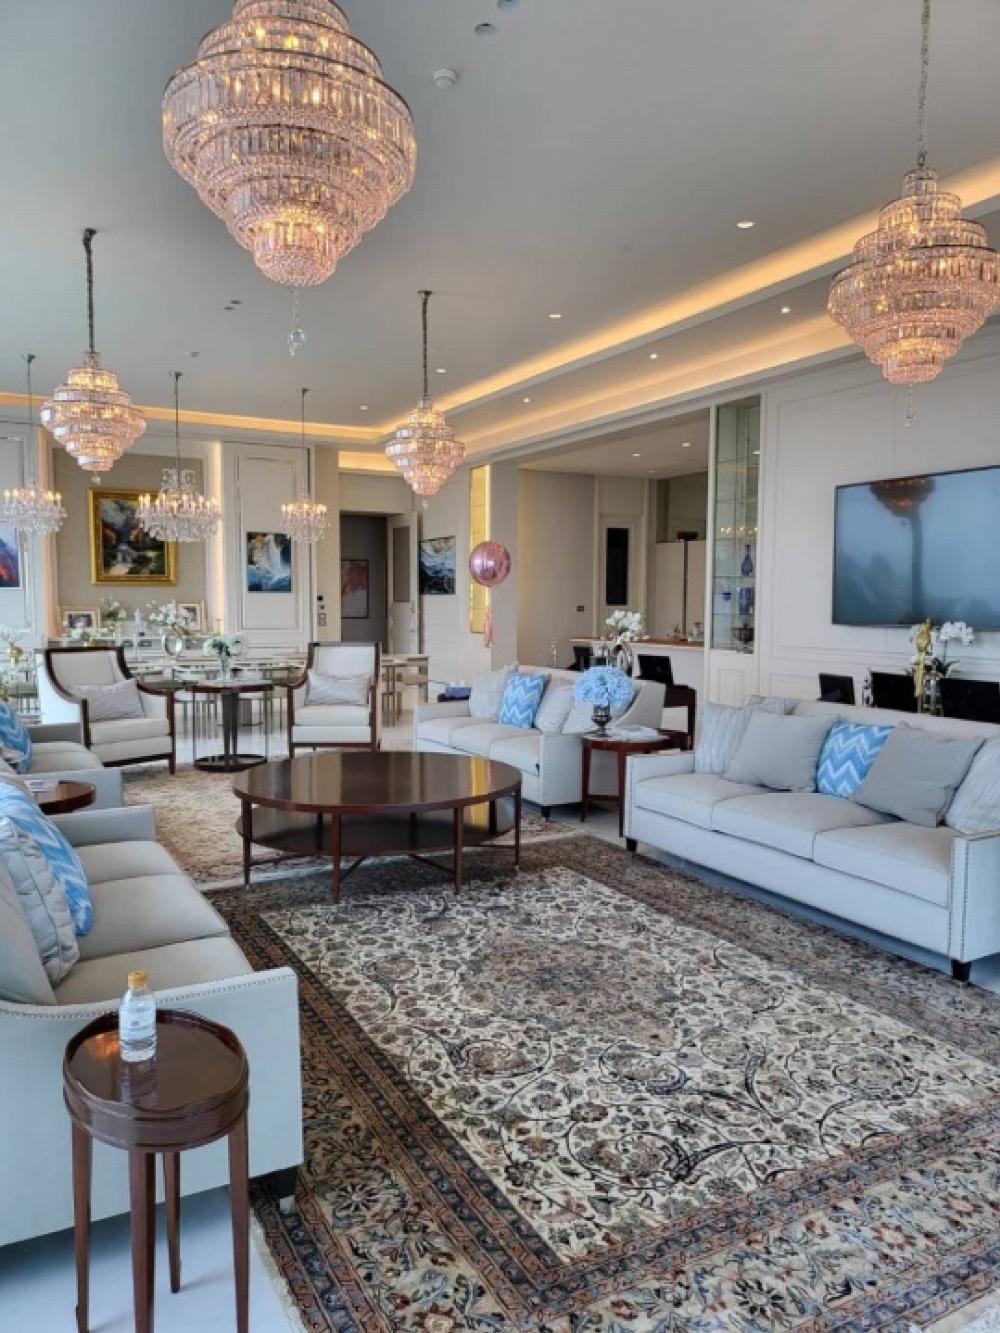 ให้เช่าคอนโดวิทยุ ชิดลม หลังสวน : Rental / Selling : The Residence at Sindhorn Kempinski Penhouse with Private Pool , 514 sqm , 4 Beds 5 Bath , Floor 34 🔥🔥Rental Price : 2,500,000 THB / Month 🔥🔥🔥🔥Selling Price : 460,000,000 THB 🔥🔥#superluxuryhousebkk#Ultraluxurycondo #luxuryhousebangkok #